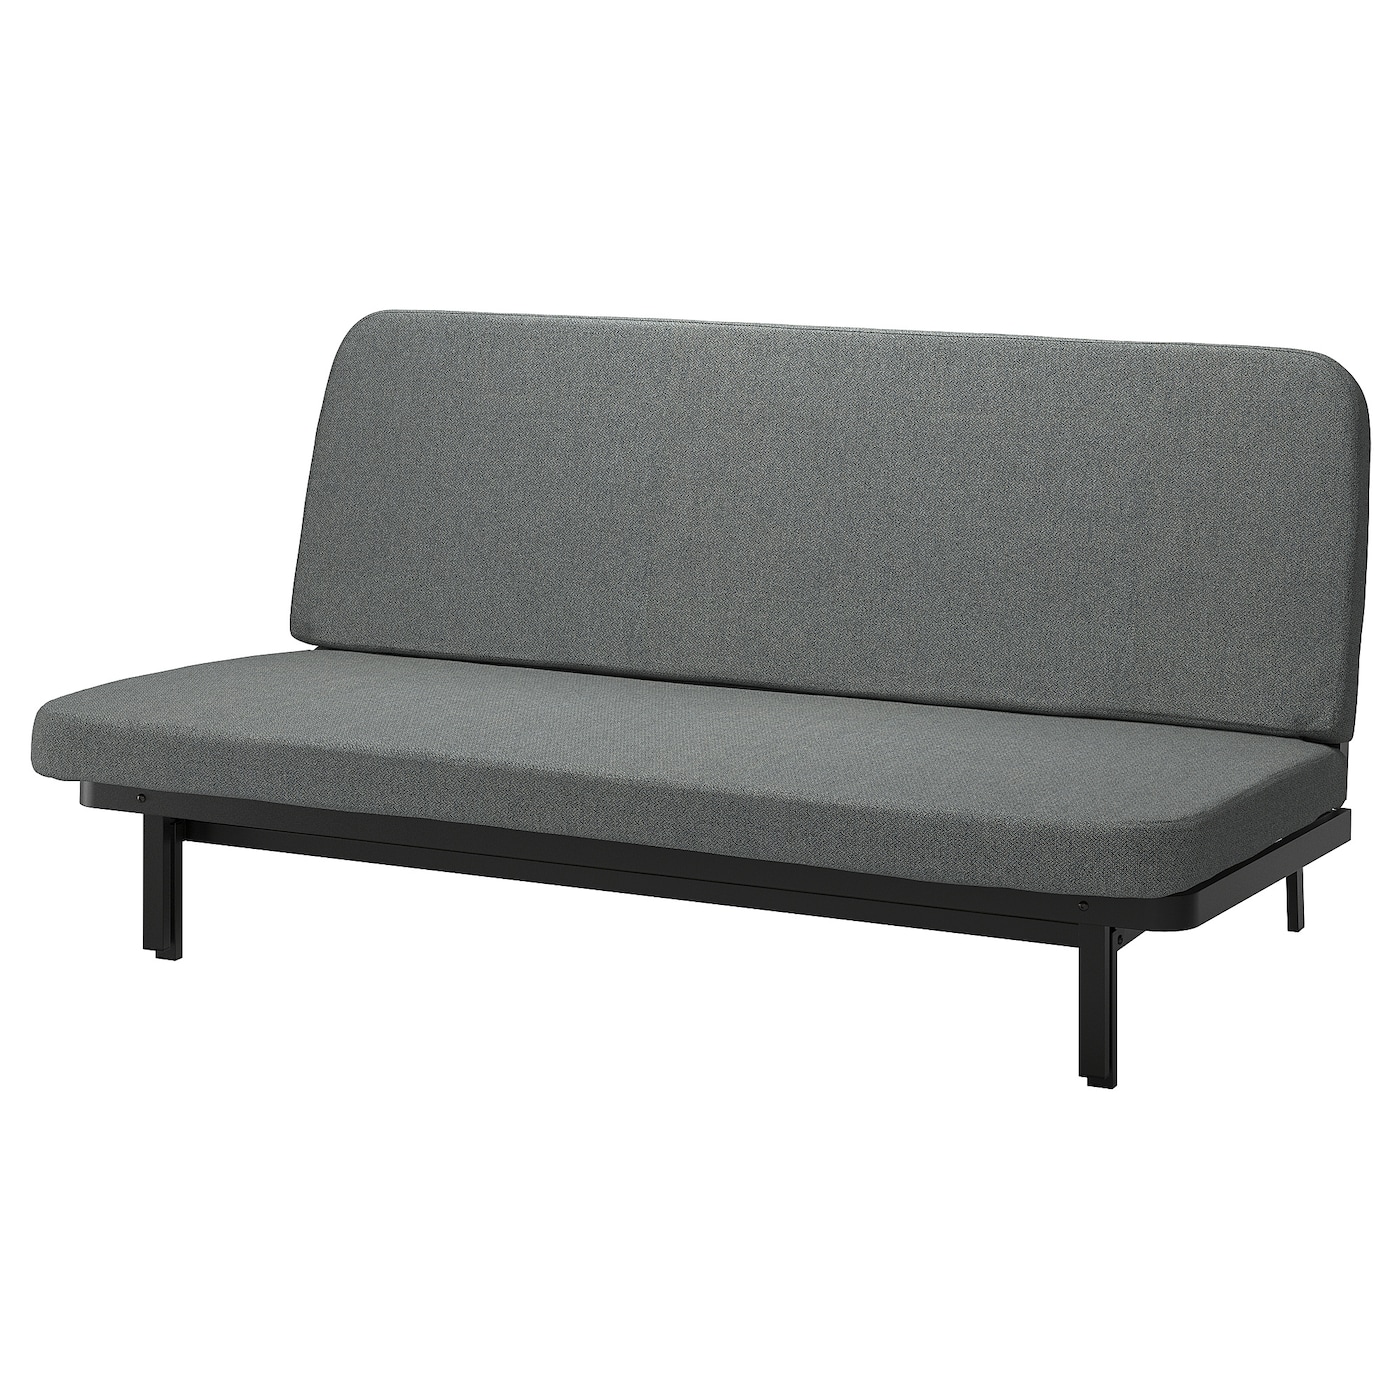 NYHAMN 3-местный диван-кровать, в комплекте пружинный матрас/Скартофта черный/светло-серый IKEA съемный и моющийся ленивый диван татами складной одинарный диван кровать спинка стул для балкона эркера складная подушка диван стул